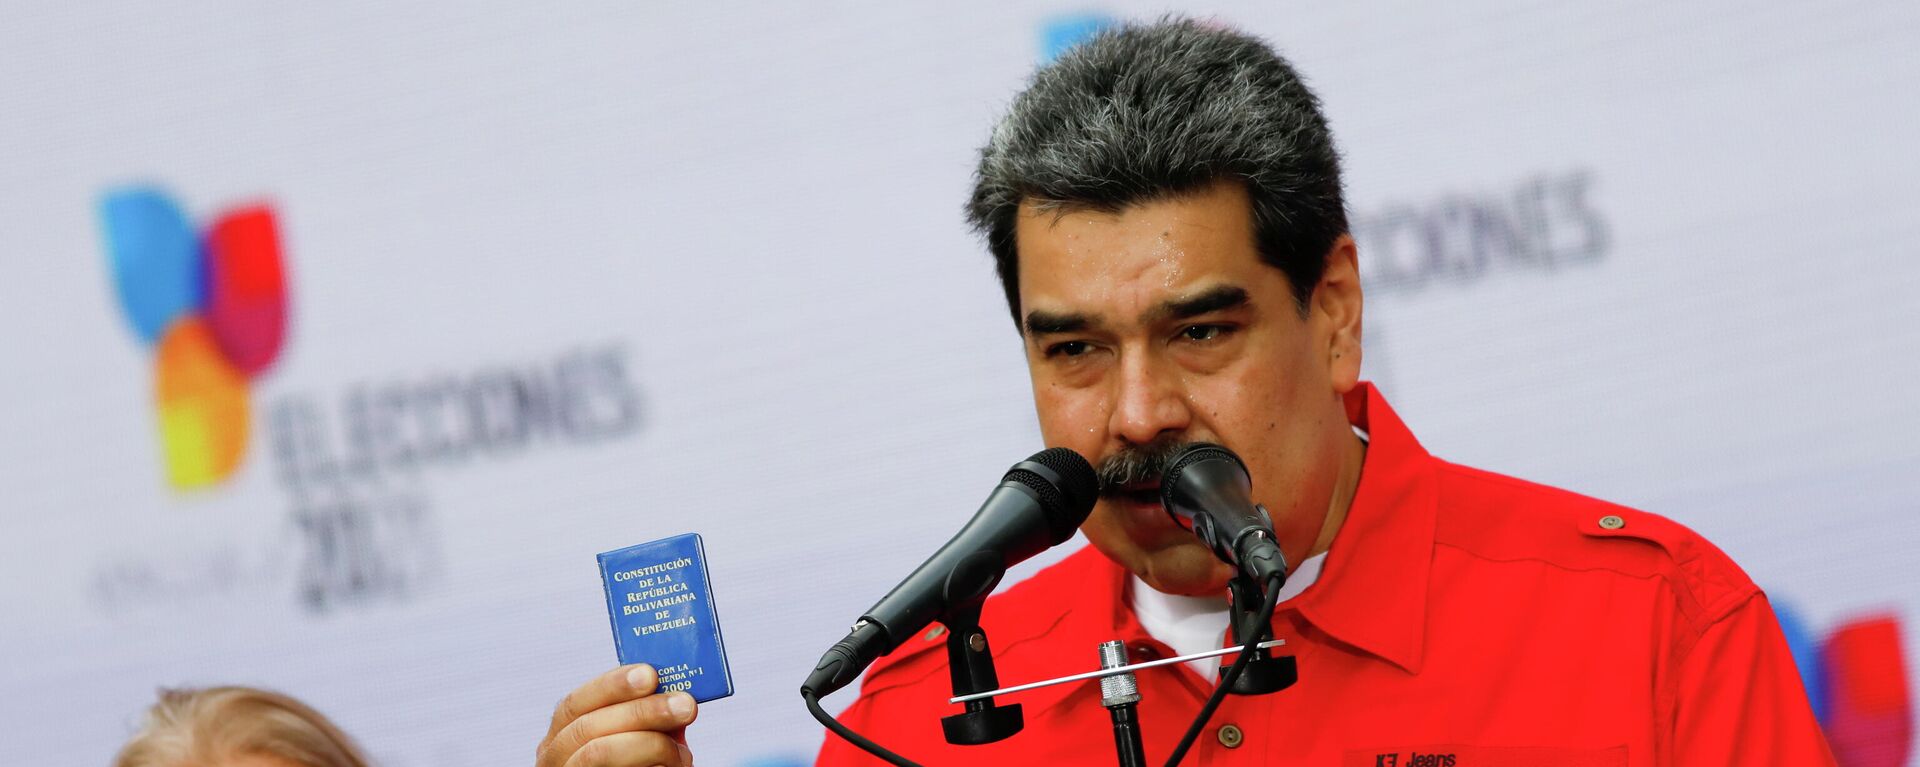 El presidente de Venezuela, Nicolás Maduro, da unas declaraciones luego de ejercer su derecho al voto en elecciones regionales - Sputnik Mundo, 1920, 20.12.2021